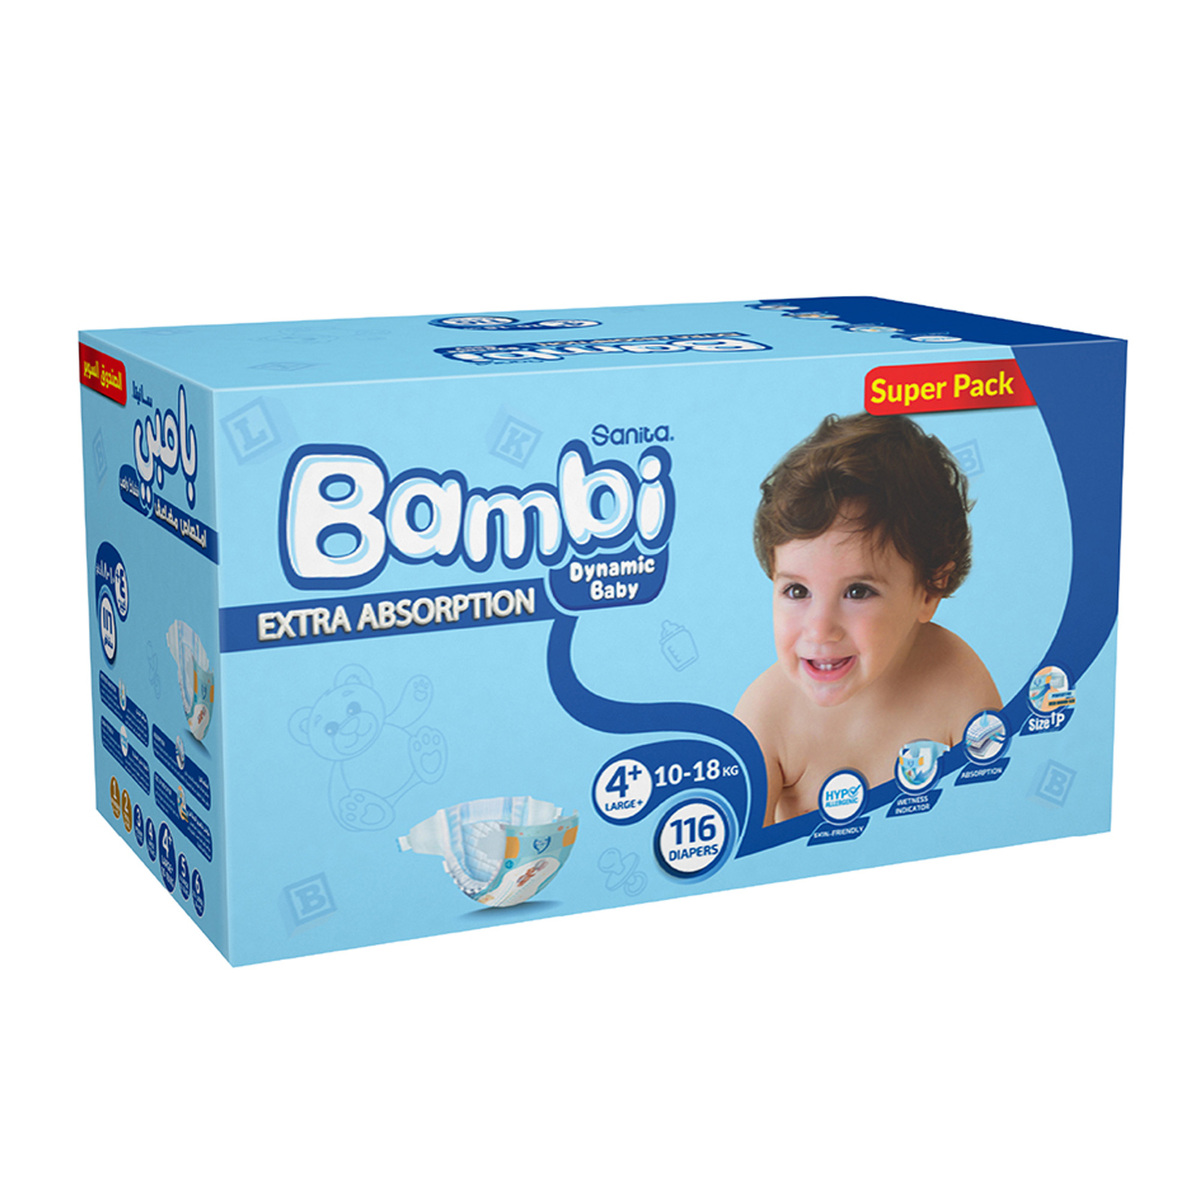 Sanita Bambi Baby Diaper Size 4+ Large 10-18kg 116pcs